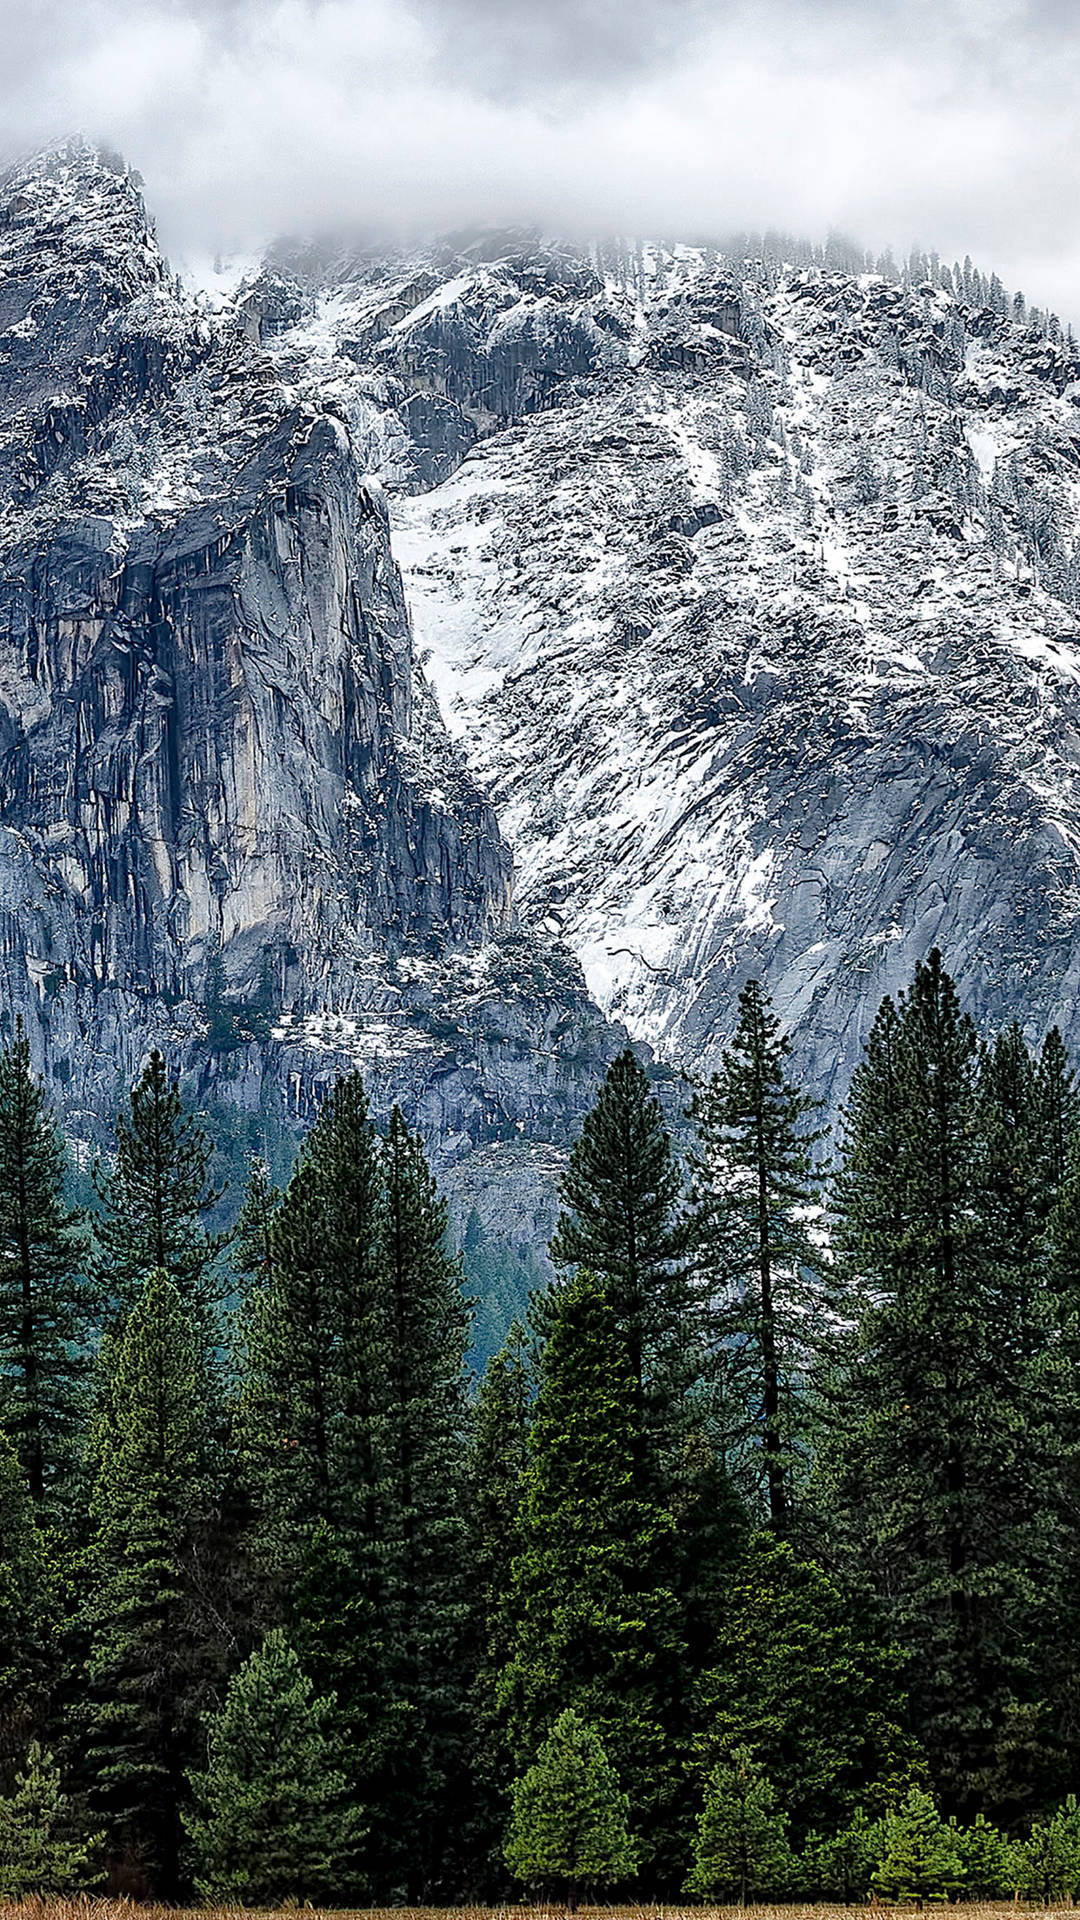 Nuvolesulle Montagne Di Yosemite Su Iphone Sfondo